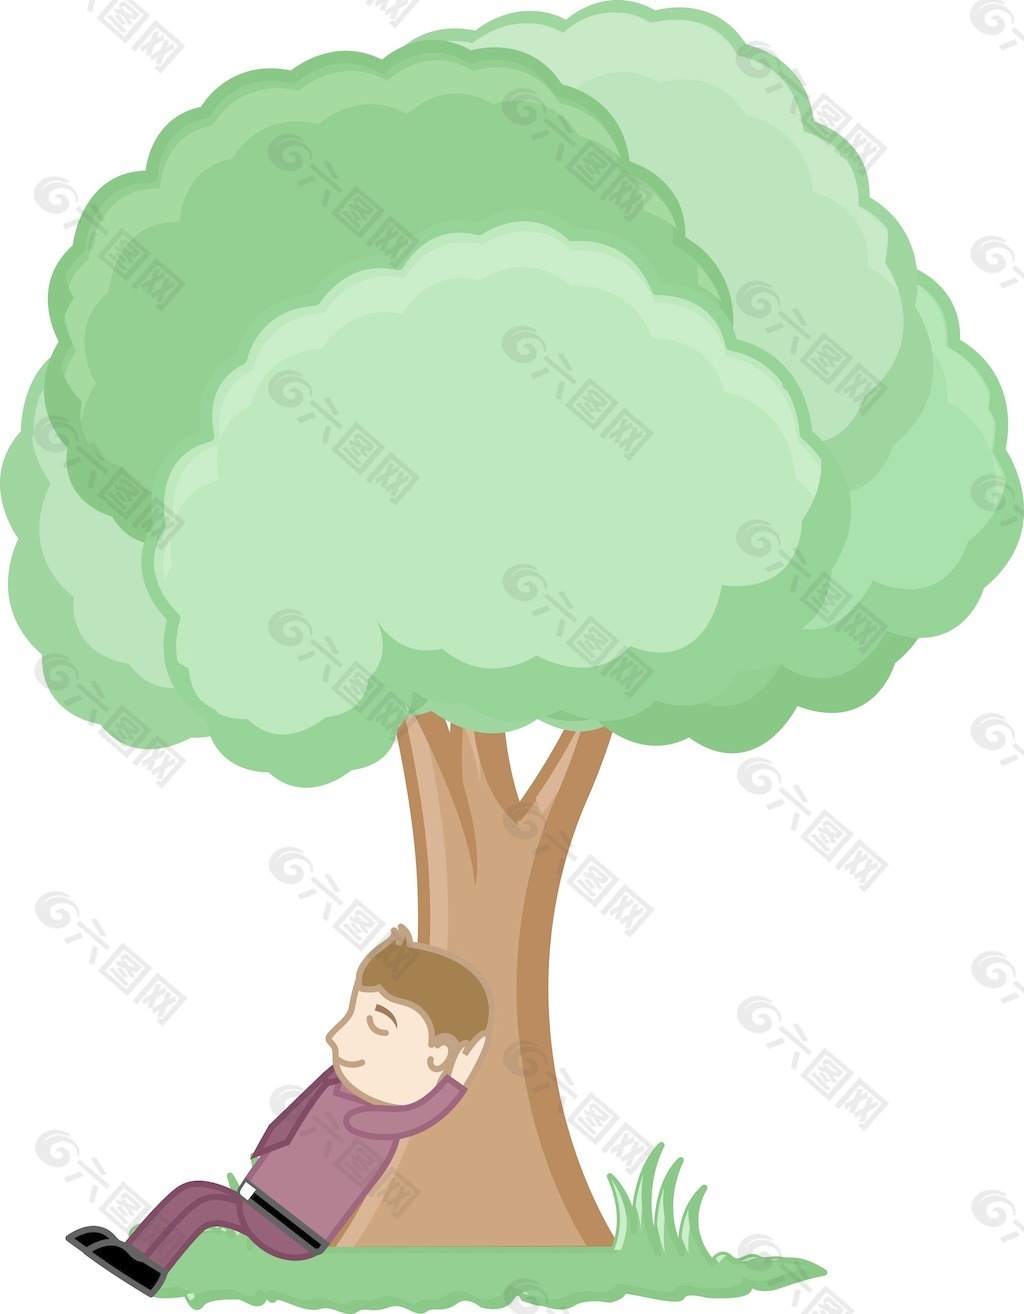 人在树下休息-卡通矢量illusatrtion